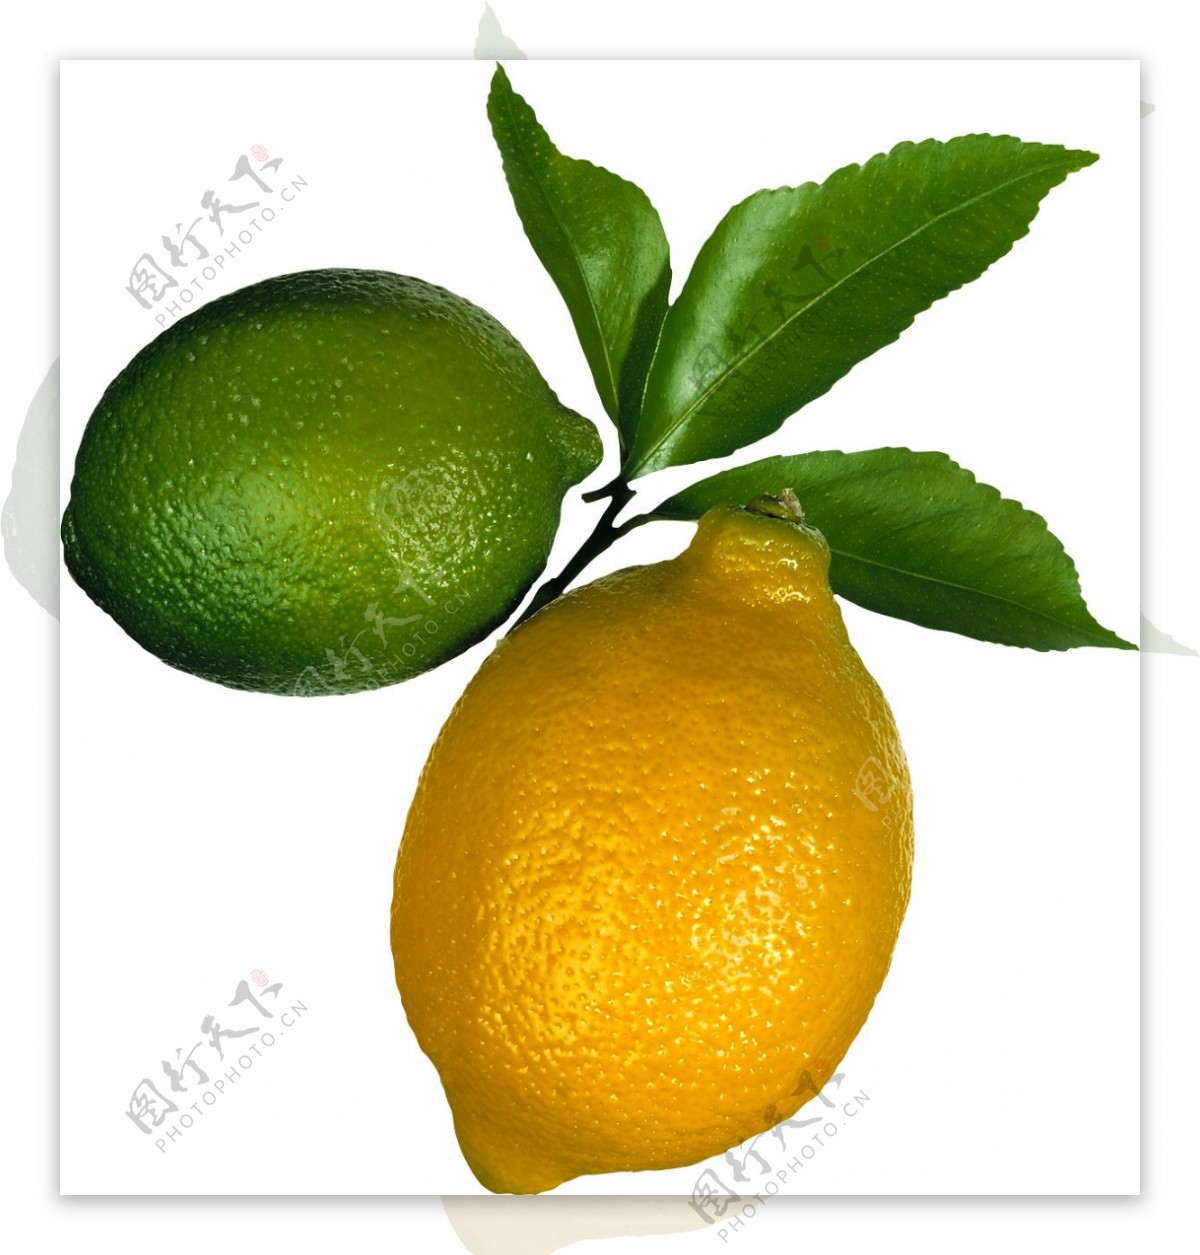 黄色柠檬与绿色柠檬图片